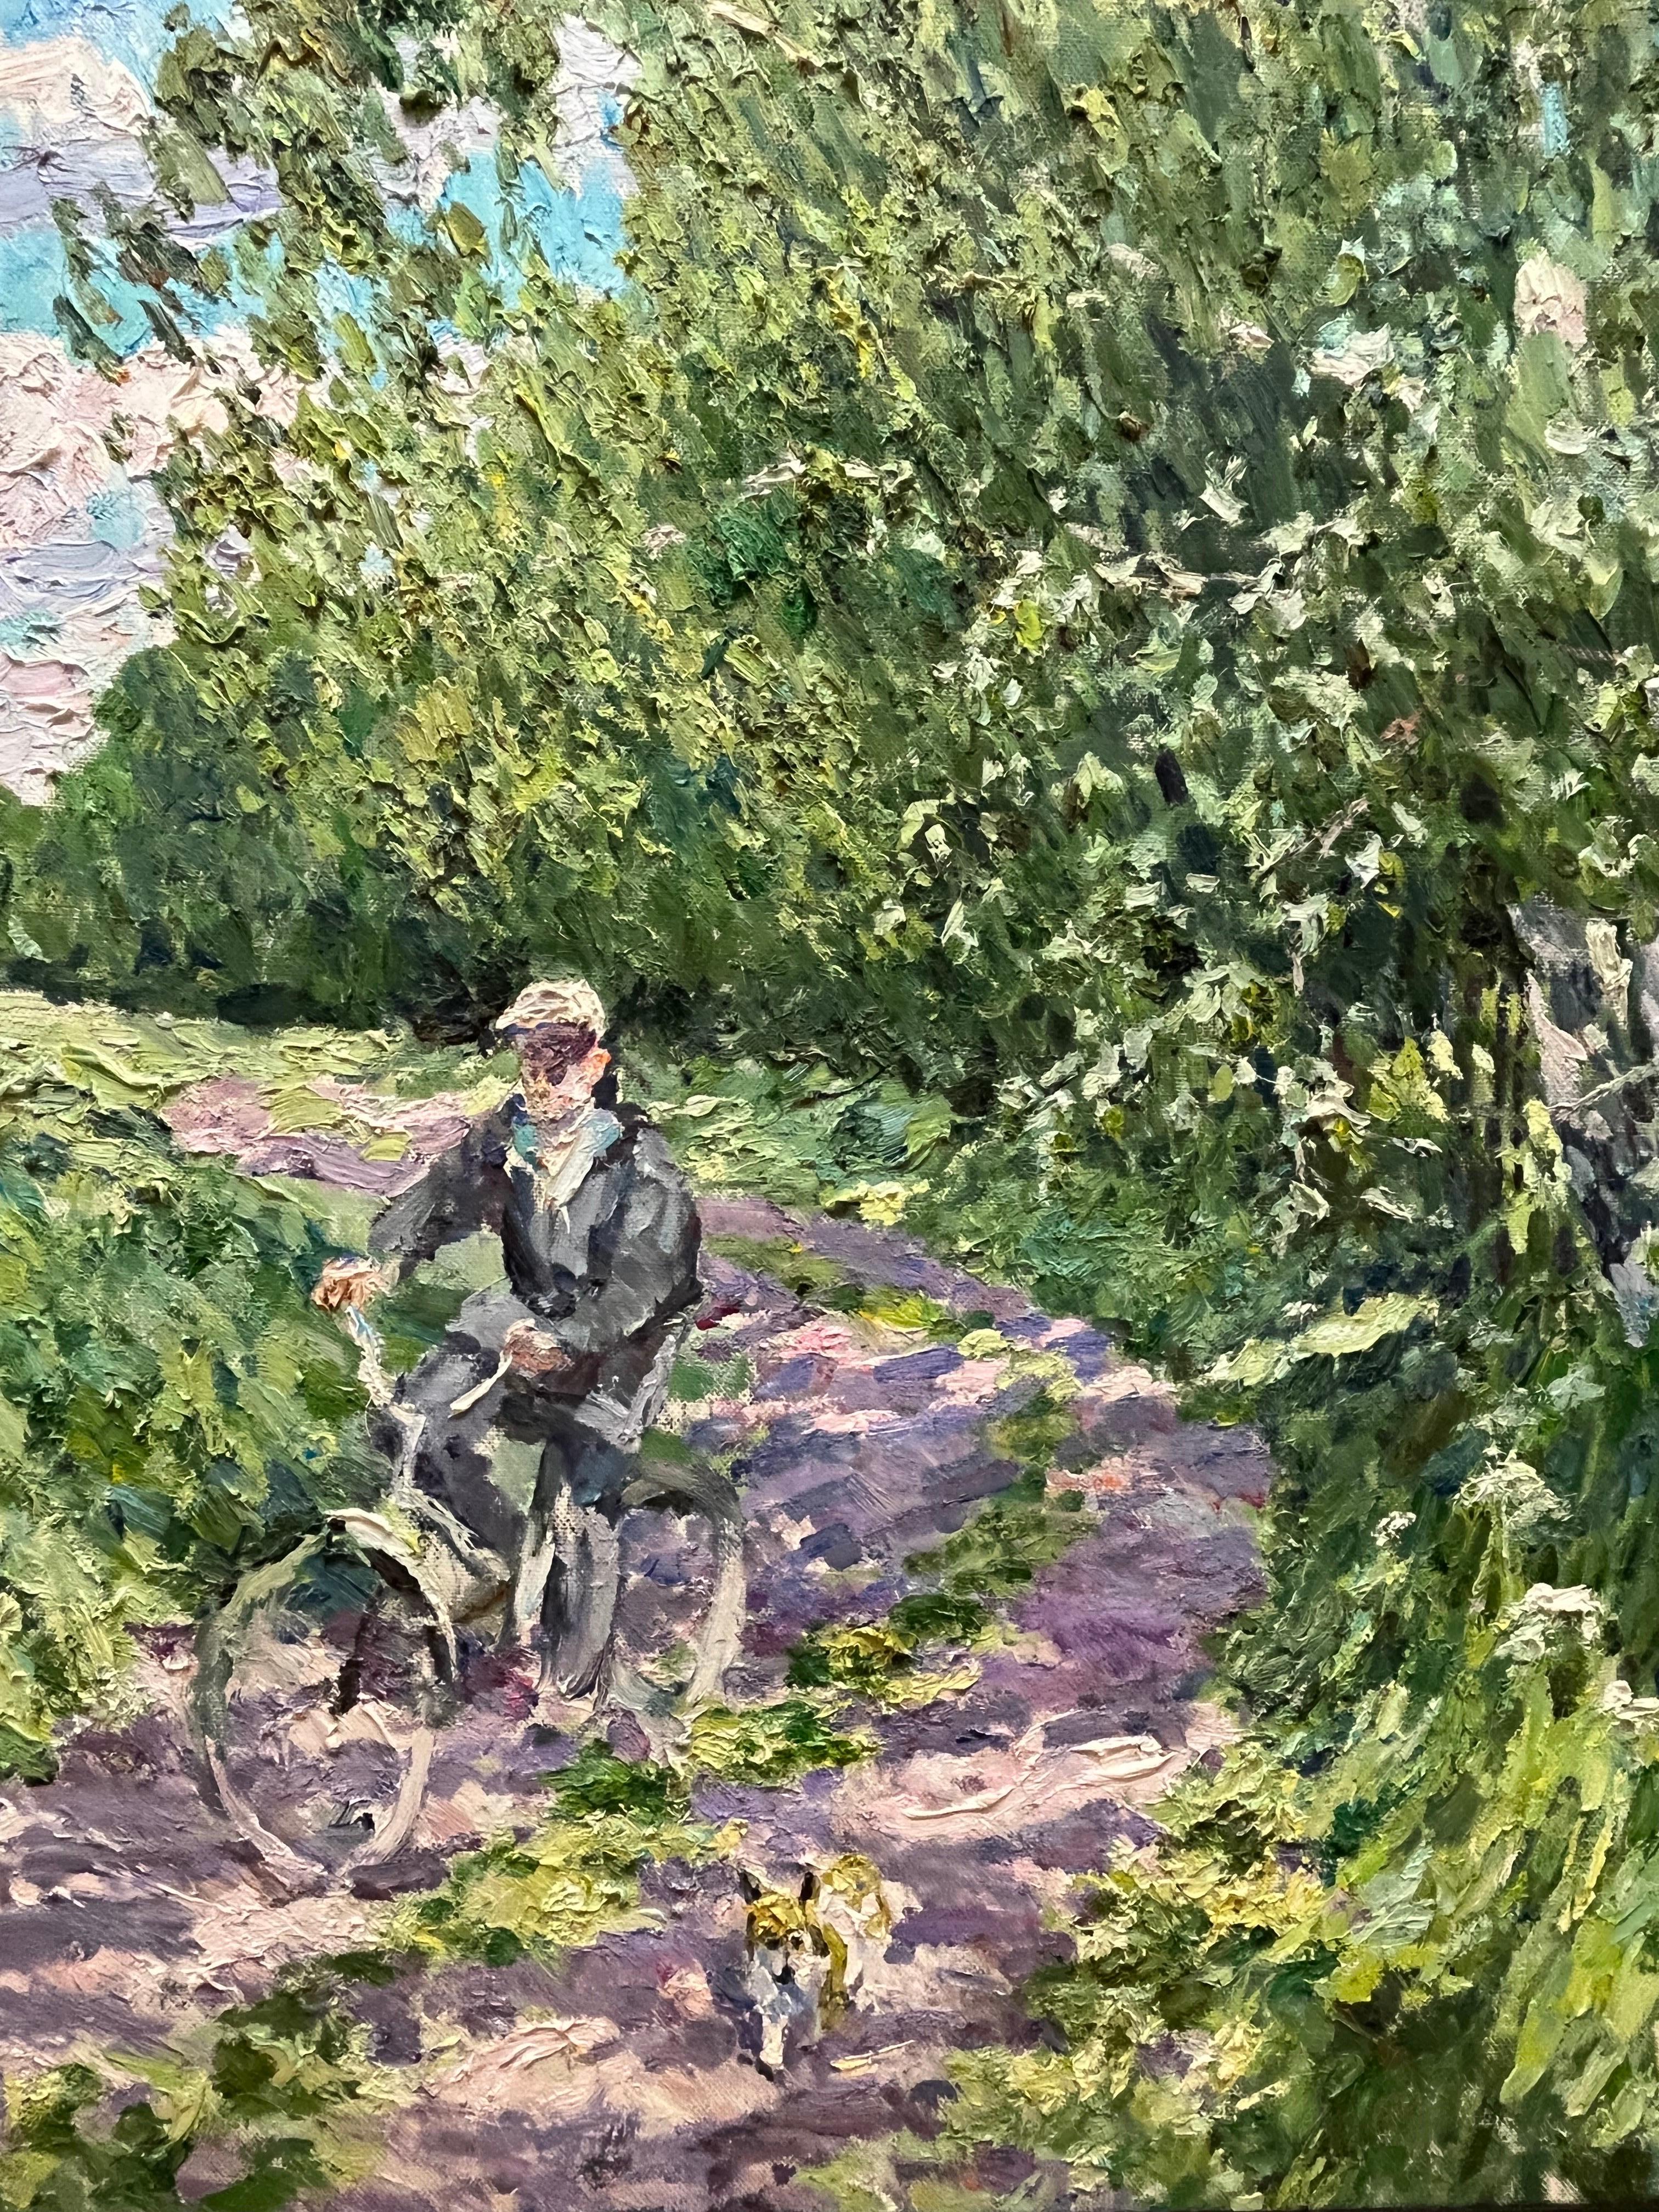 « Summer » - Bicyclette de campagne, vert, chien, 136 x 119 cm  - Painting de Georgij Moroz